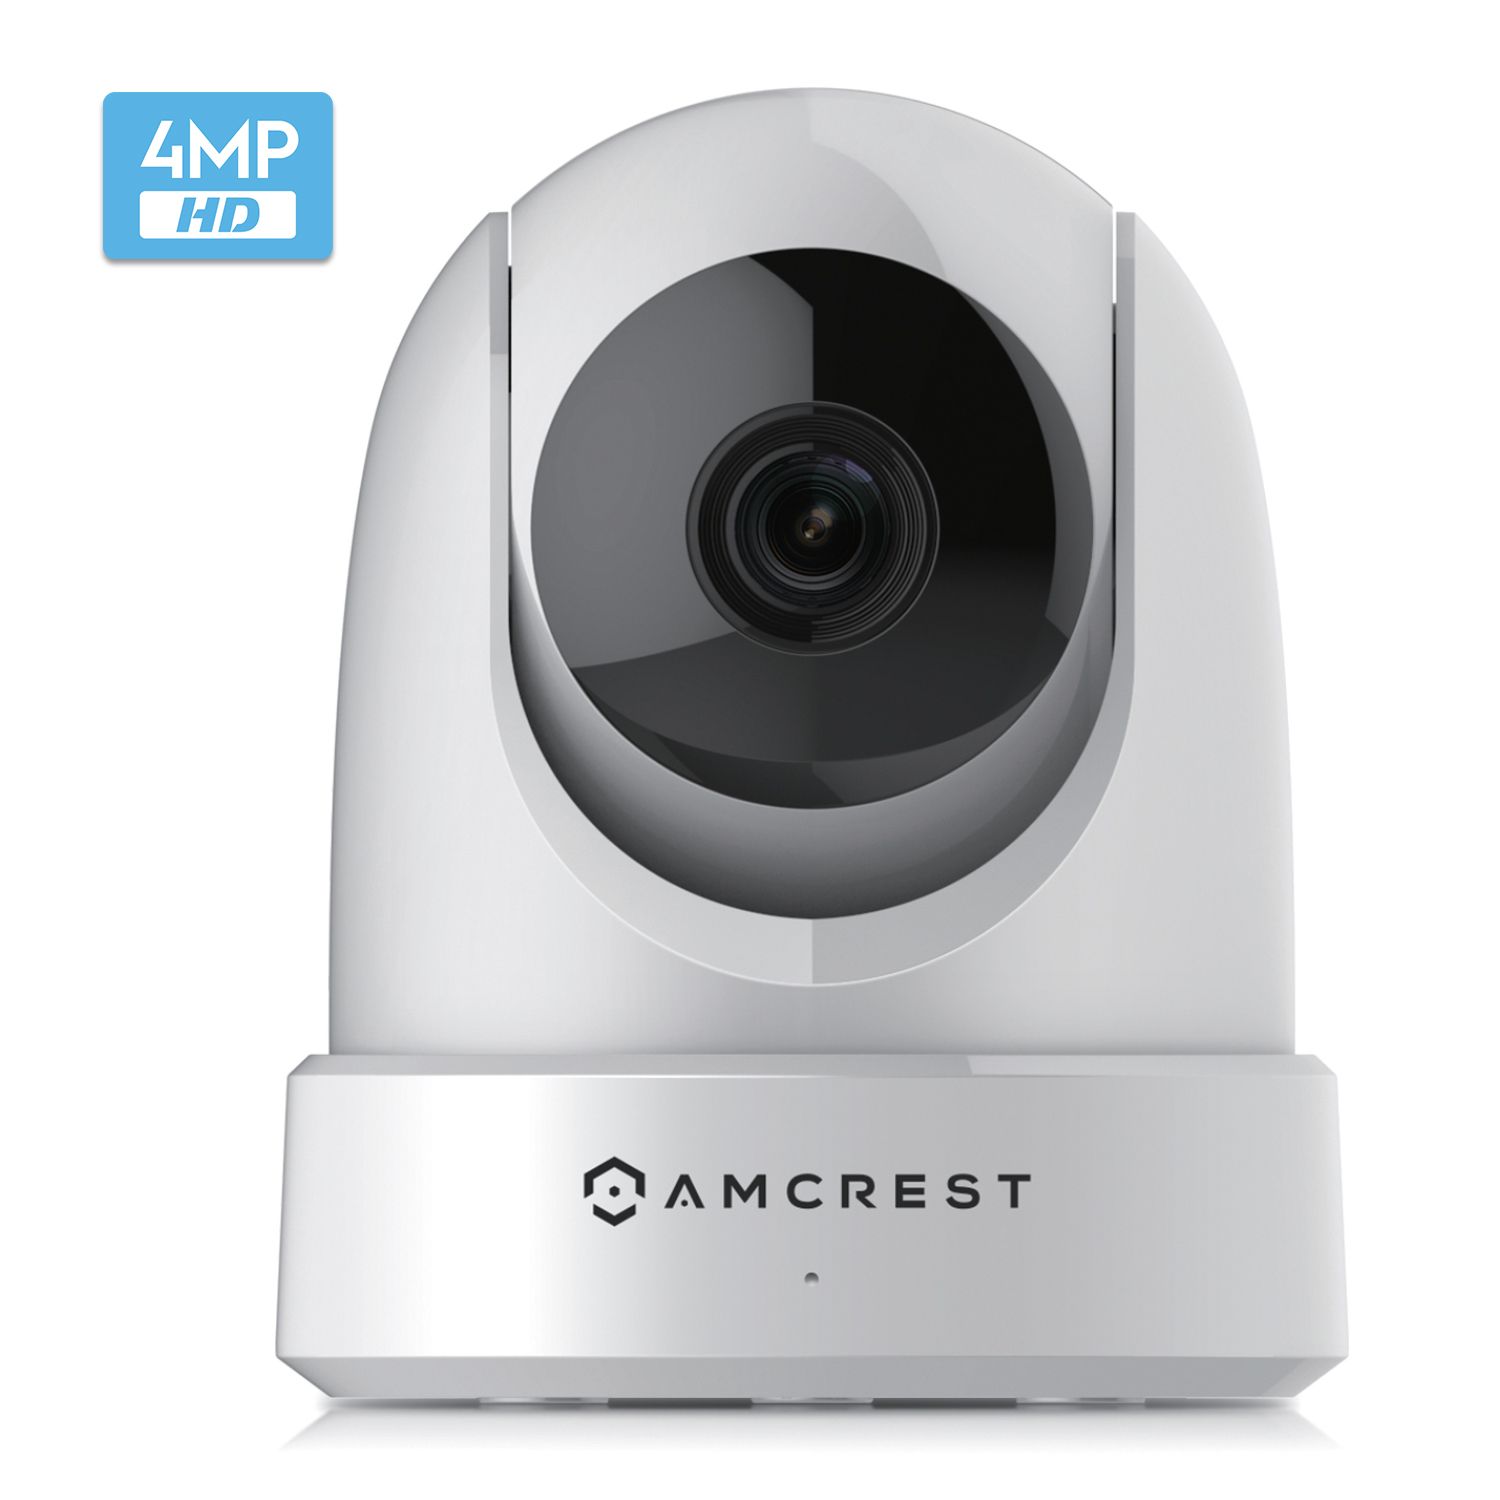 Aannemer Bekend steeg Wifi security camera | Amcrest